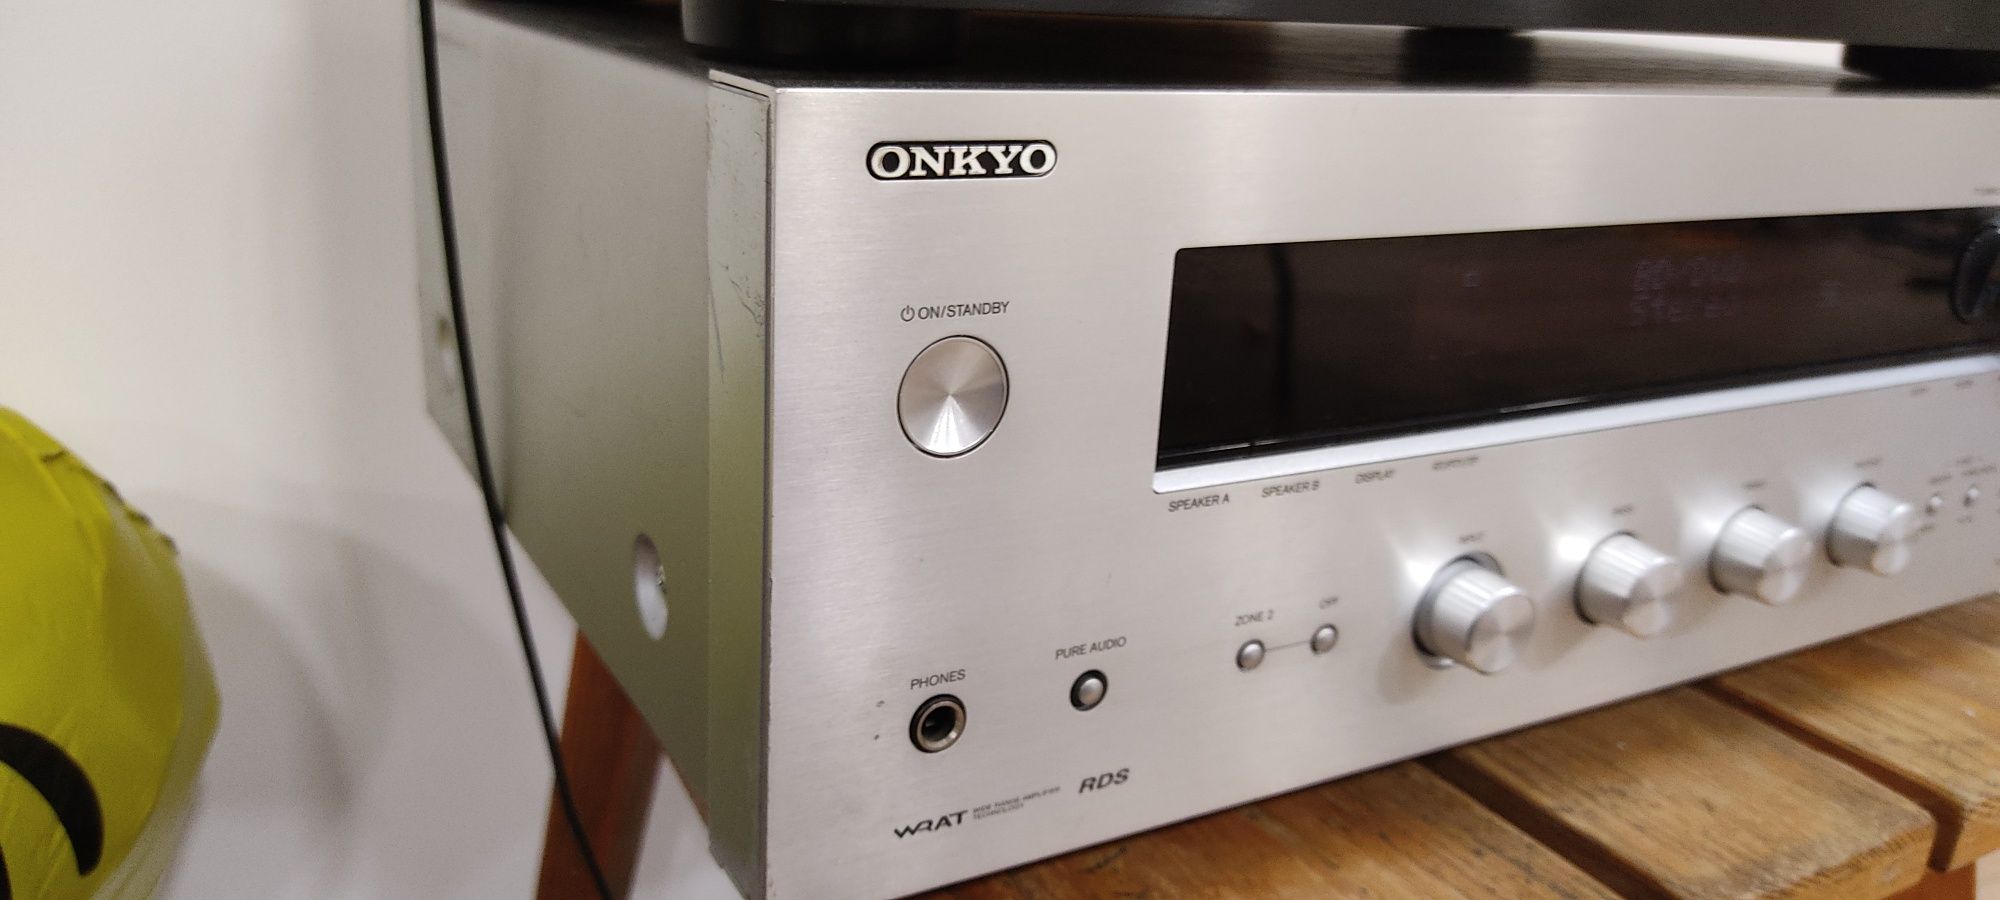 Onkyo tx-8050/ Tx-8030 sprawny opis